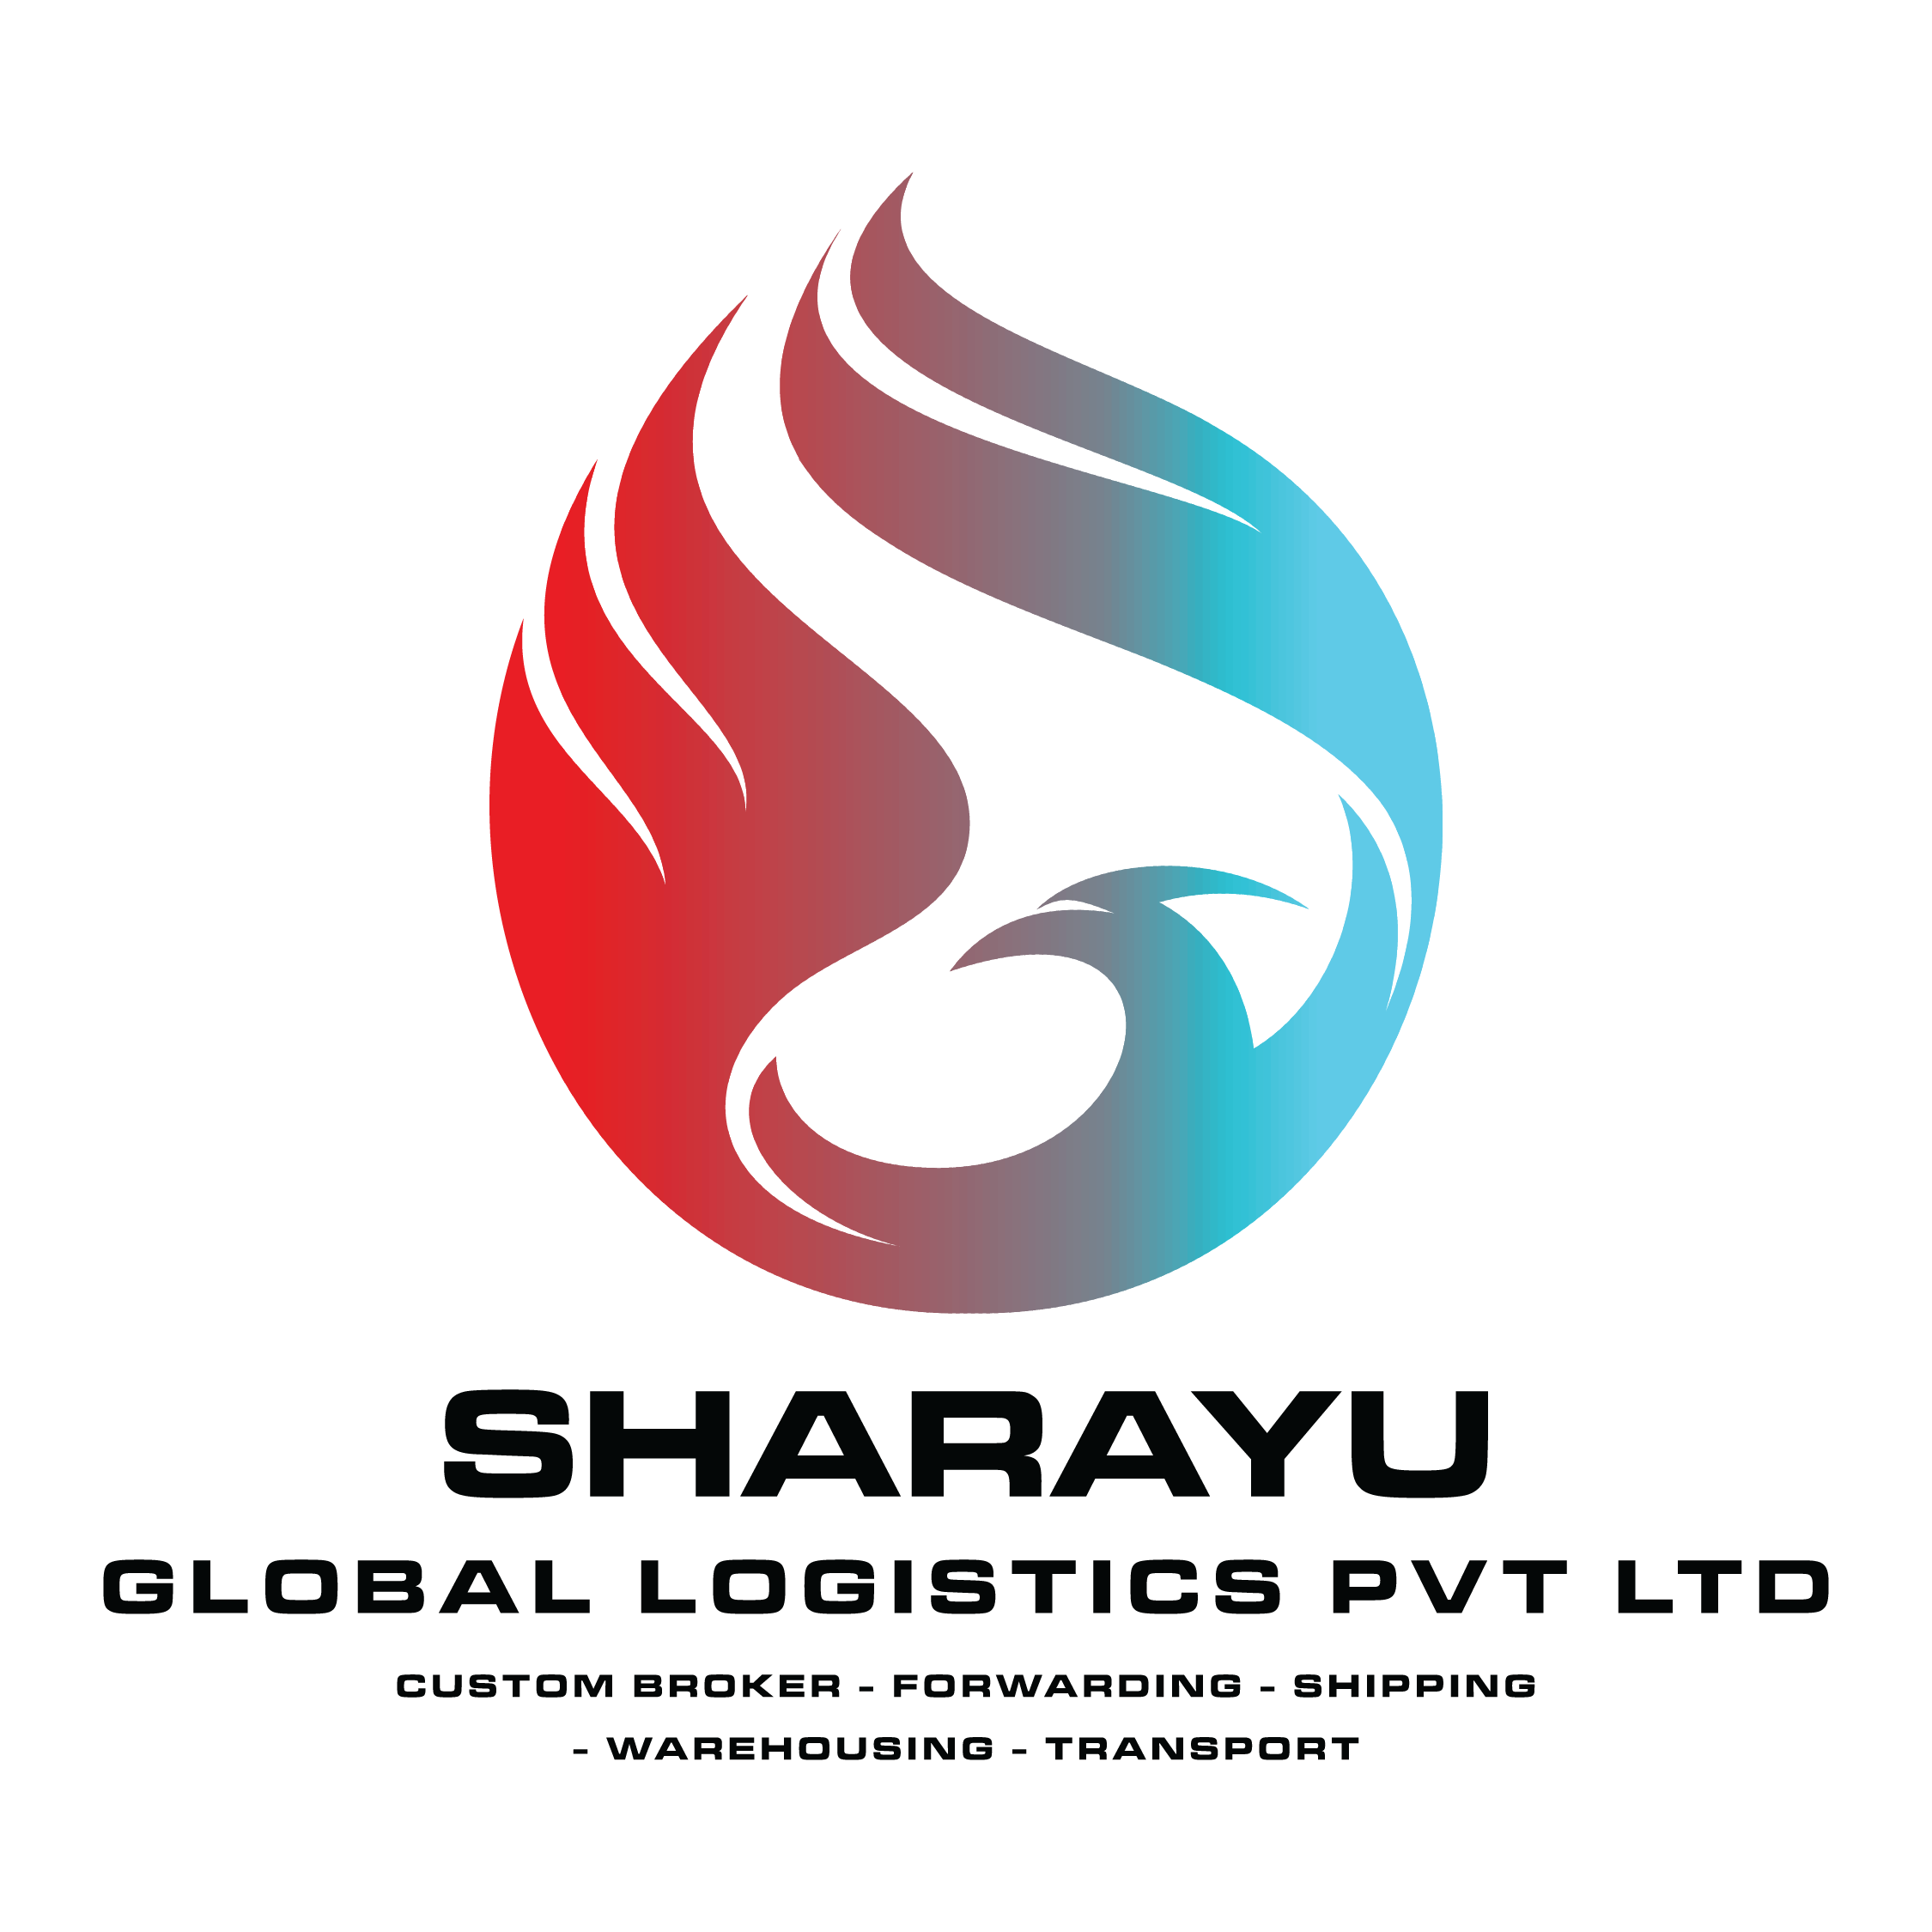 SHARAYU GLOBAL LOGISTICS PVT. LTD.